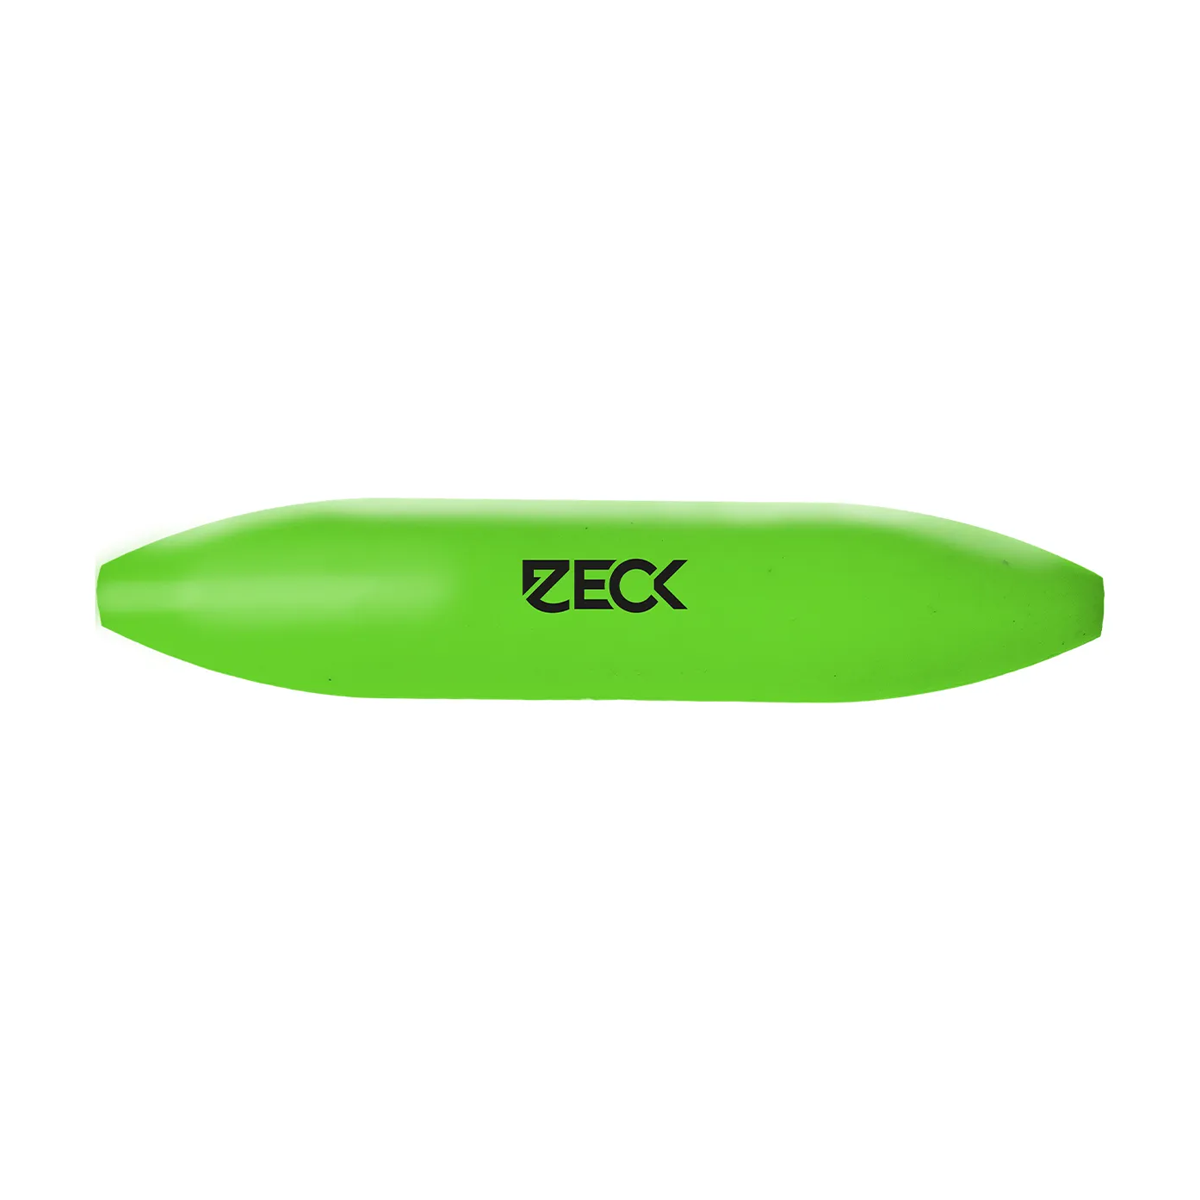 Zeck U-Float Solid Green -  3 gram -  7 gram -  5 gram -  10 gram -  15 gram -  20 gram -  30 gram -  40 gram